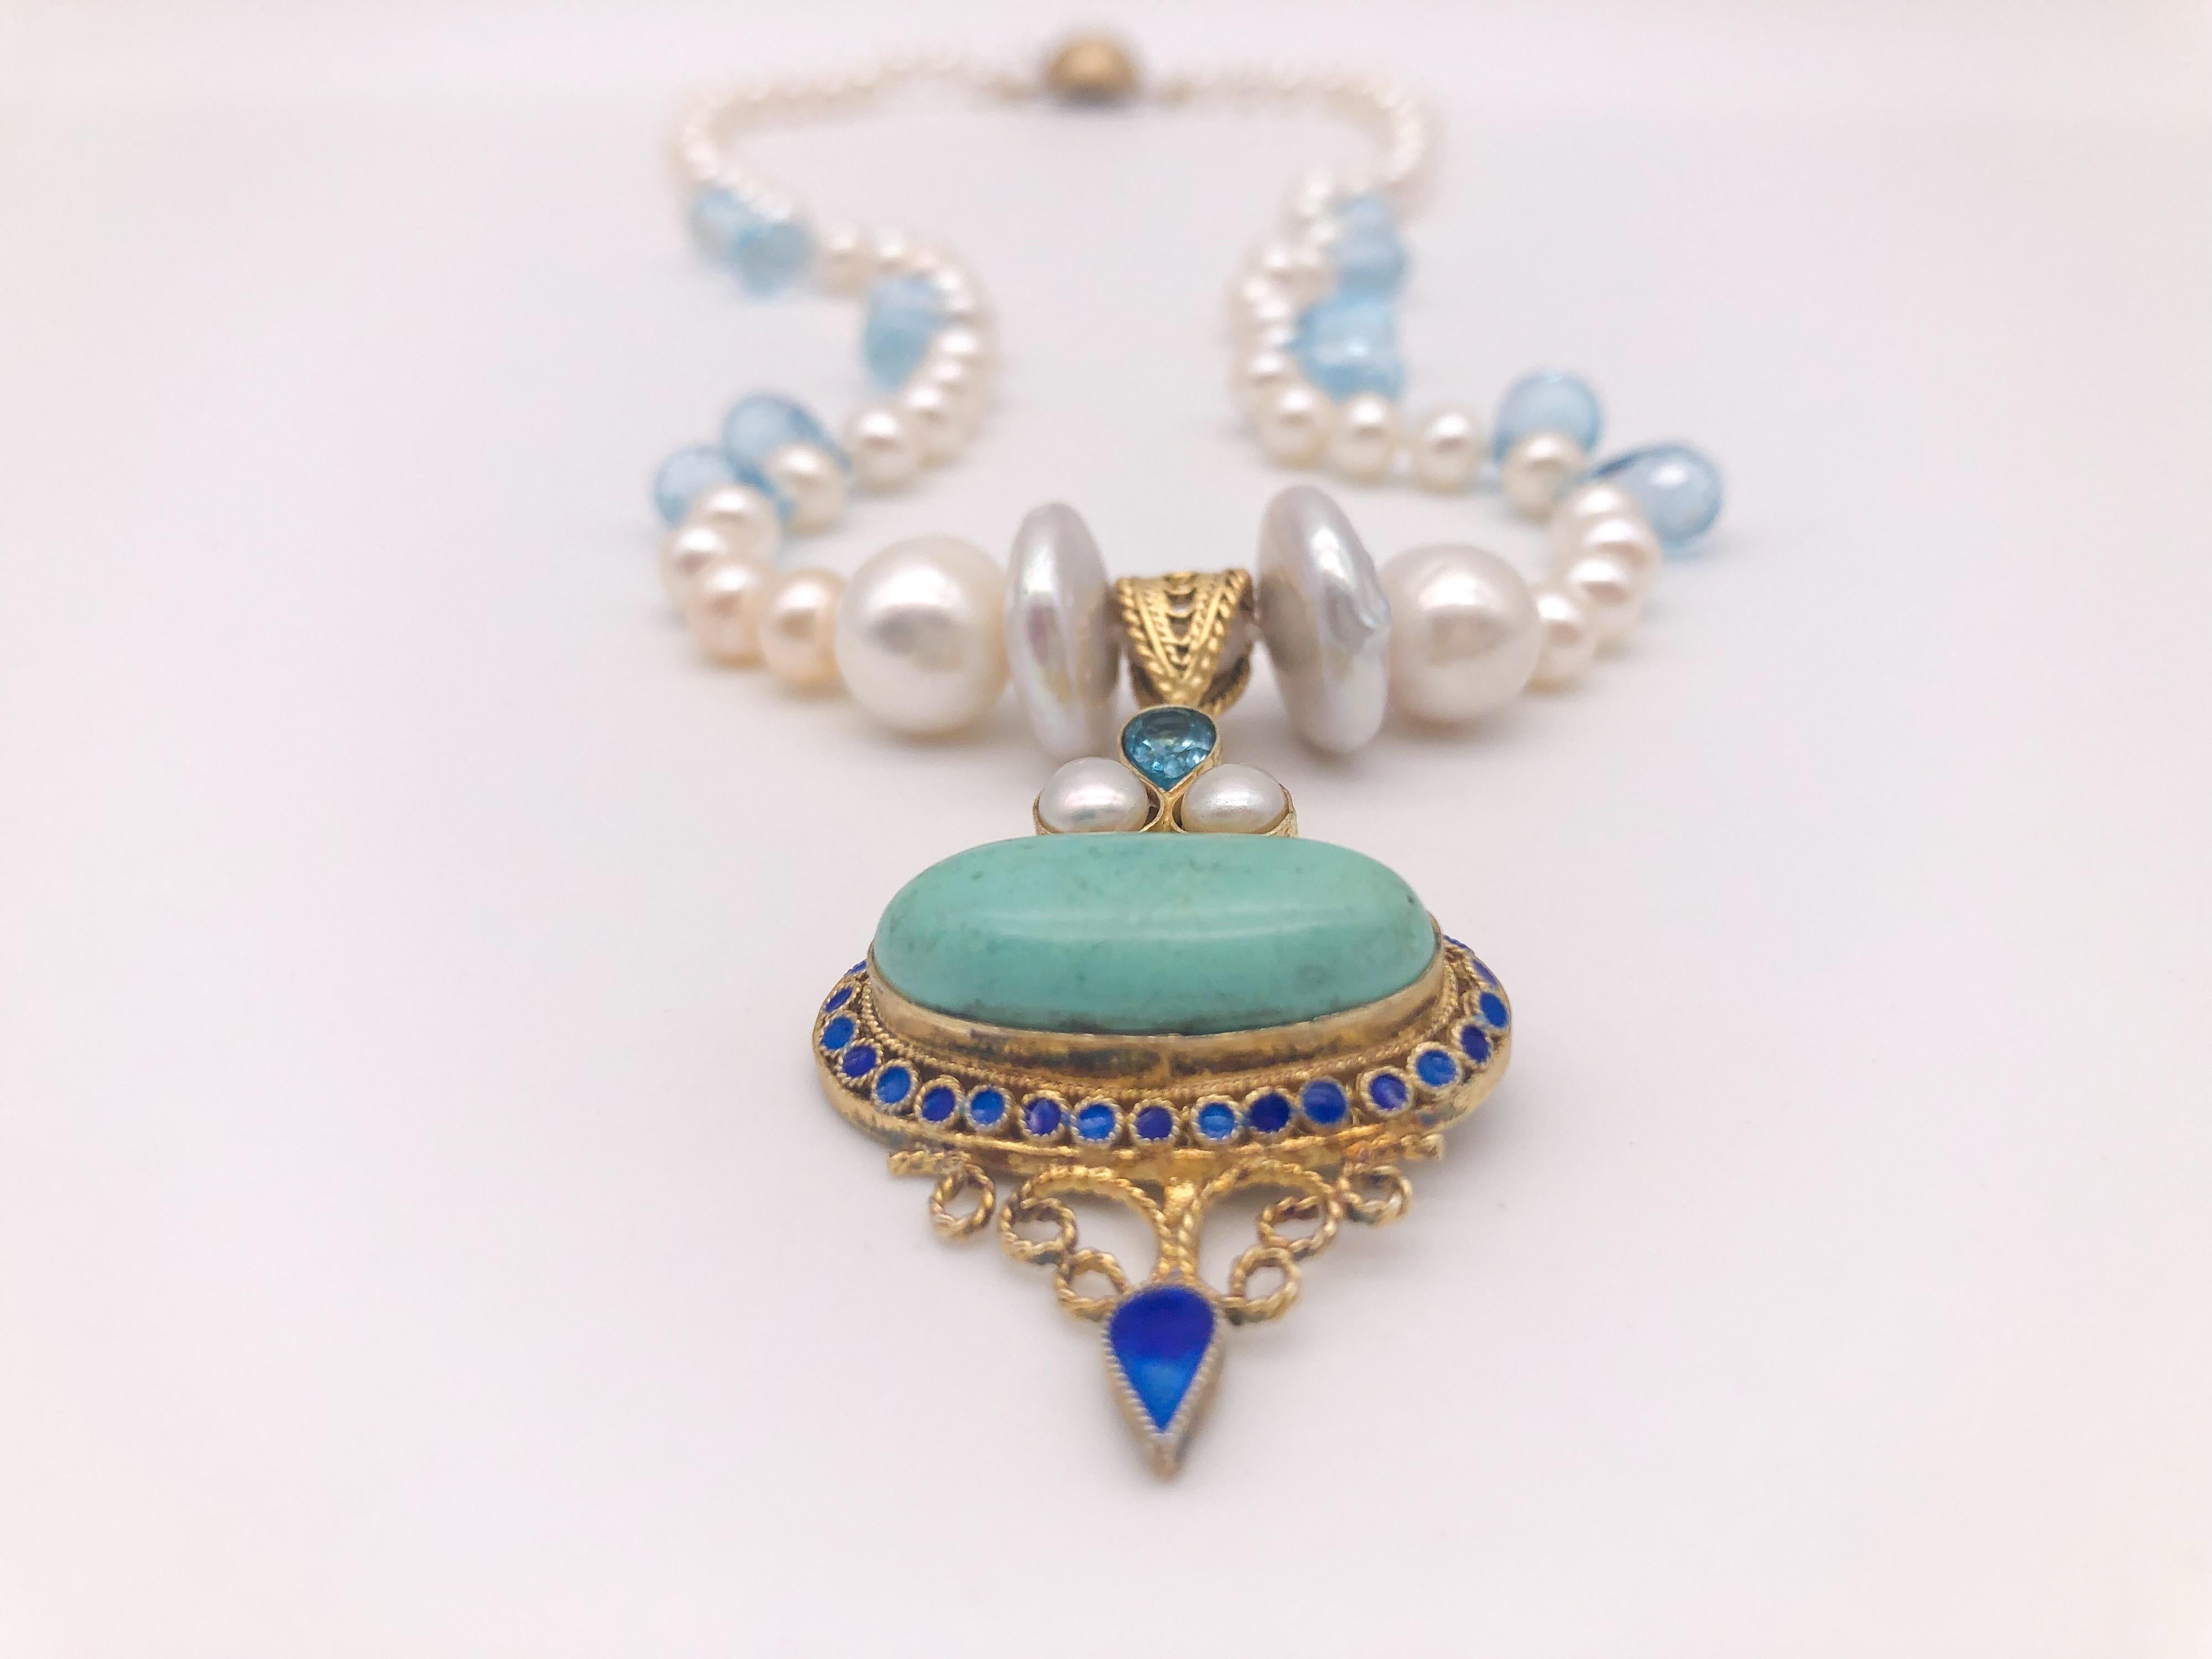 Unique en son genre
Collier d'un seul rang de perles de 6 mm nouées à la main entre des gouttes de topaze bleue.
Le collier supporte un pendentif Barbara Garwood en topaze bleue, perle et turquoise émaillée. Le pendentif a été fabriqué en Mongolie